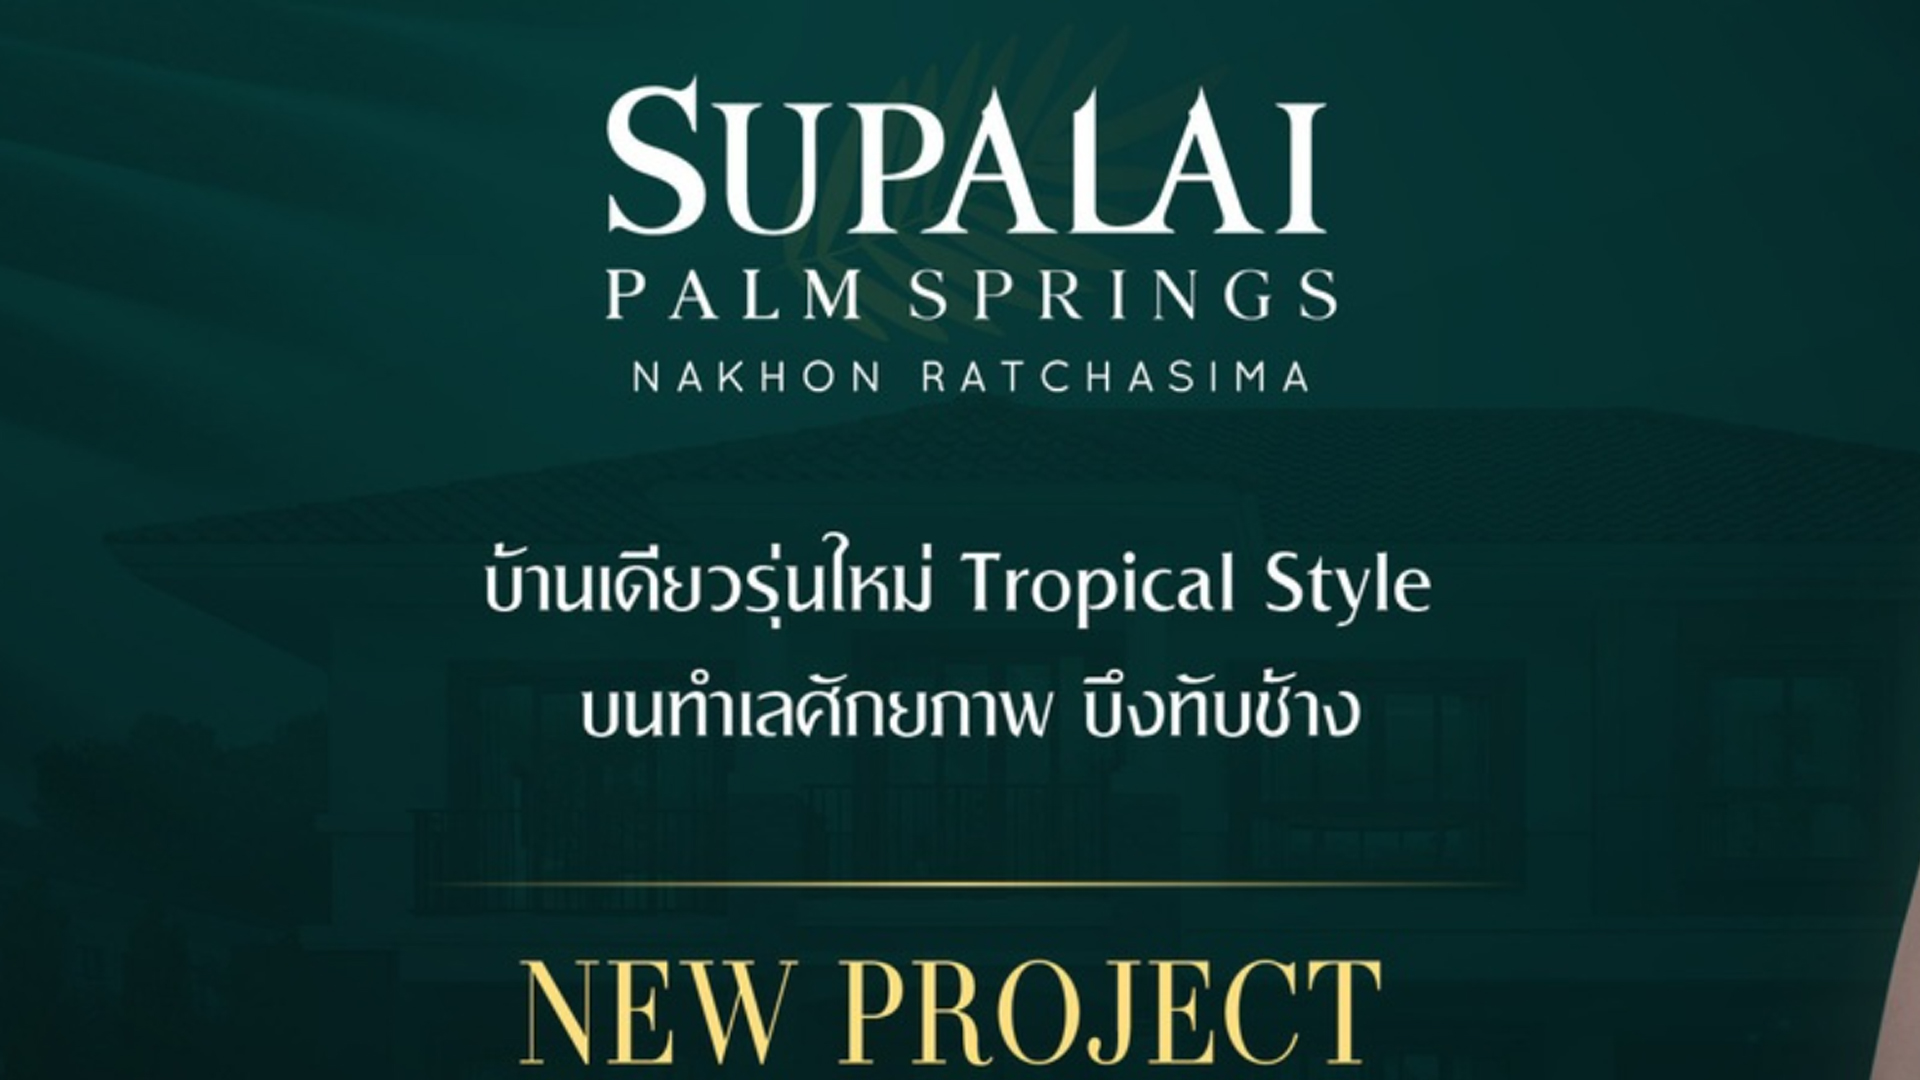 ศุภาลัย ปาล์มสปริงส์ นครราชสีมา (Supalai Plam Springs Nakhonratchasima) : ภาพที่ 3